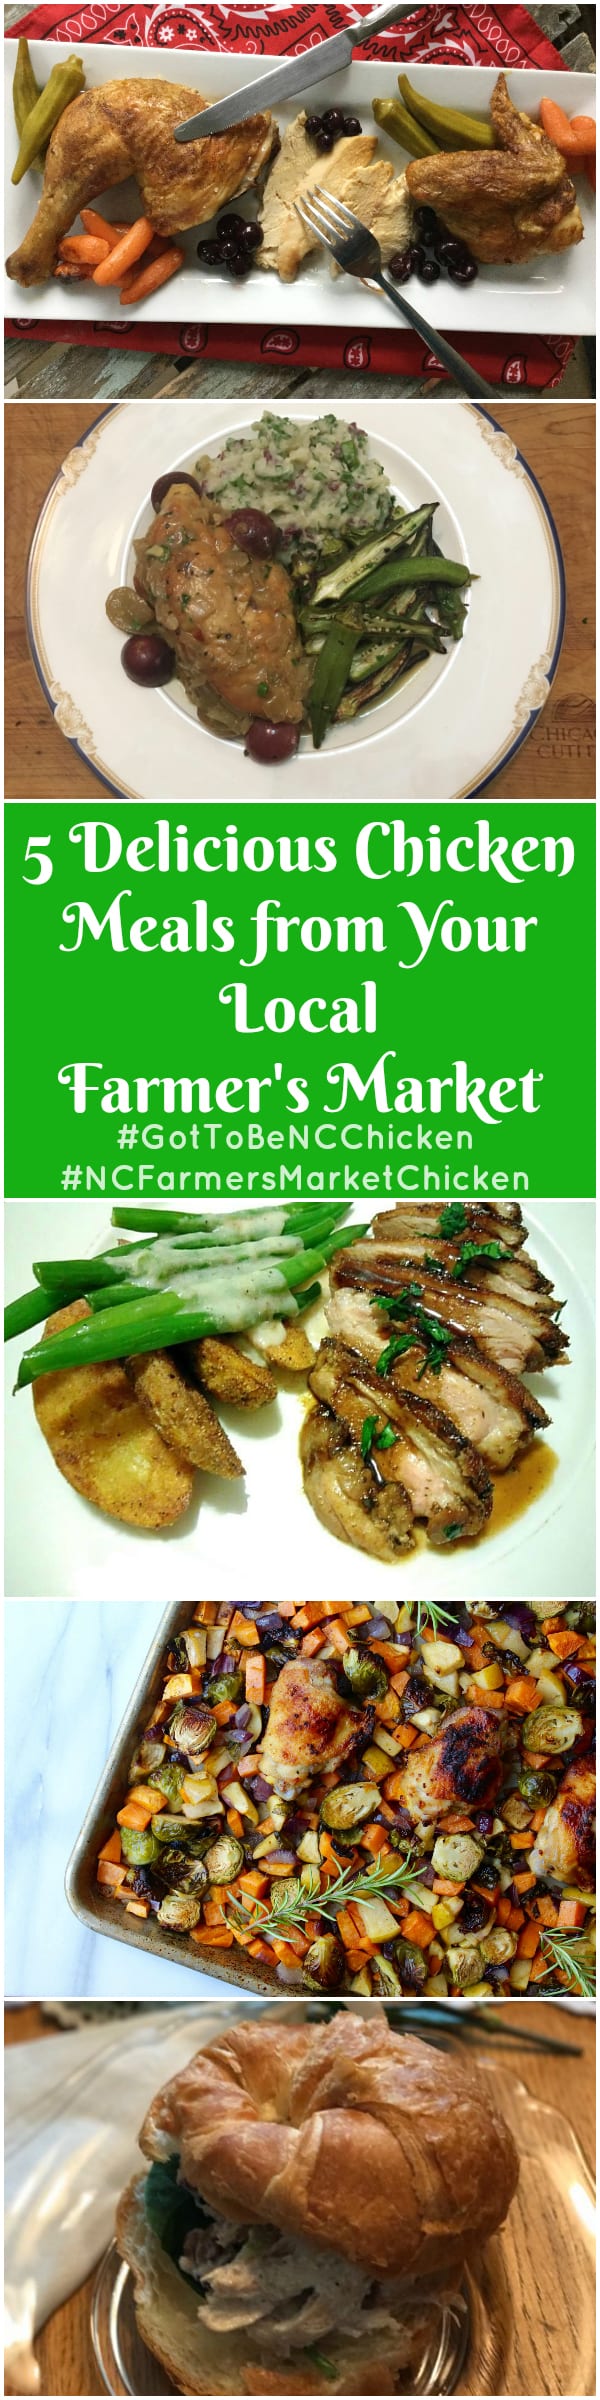 Collage of Chicken meals from Local farmers market. #GotToBeNCChicken and #NCFarmersMarketChicken.